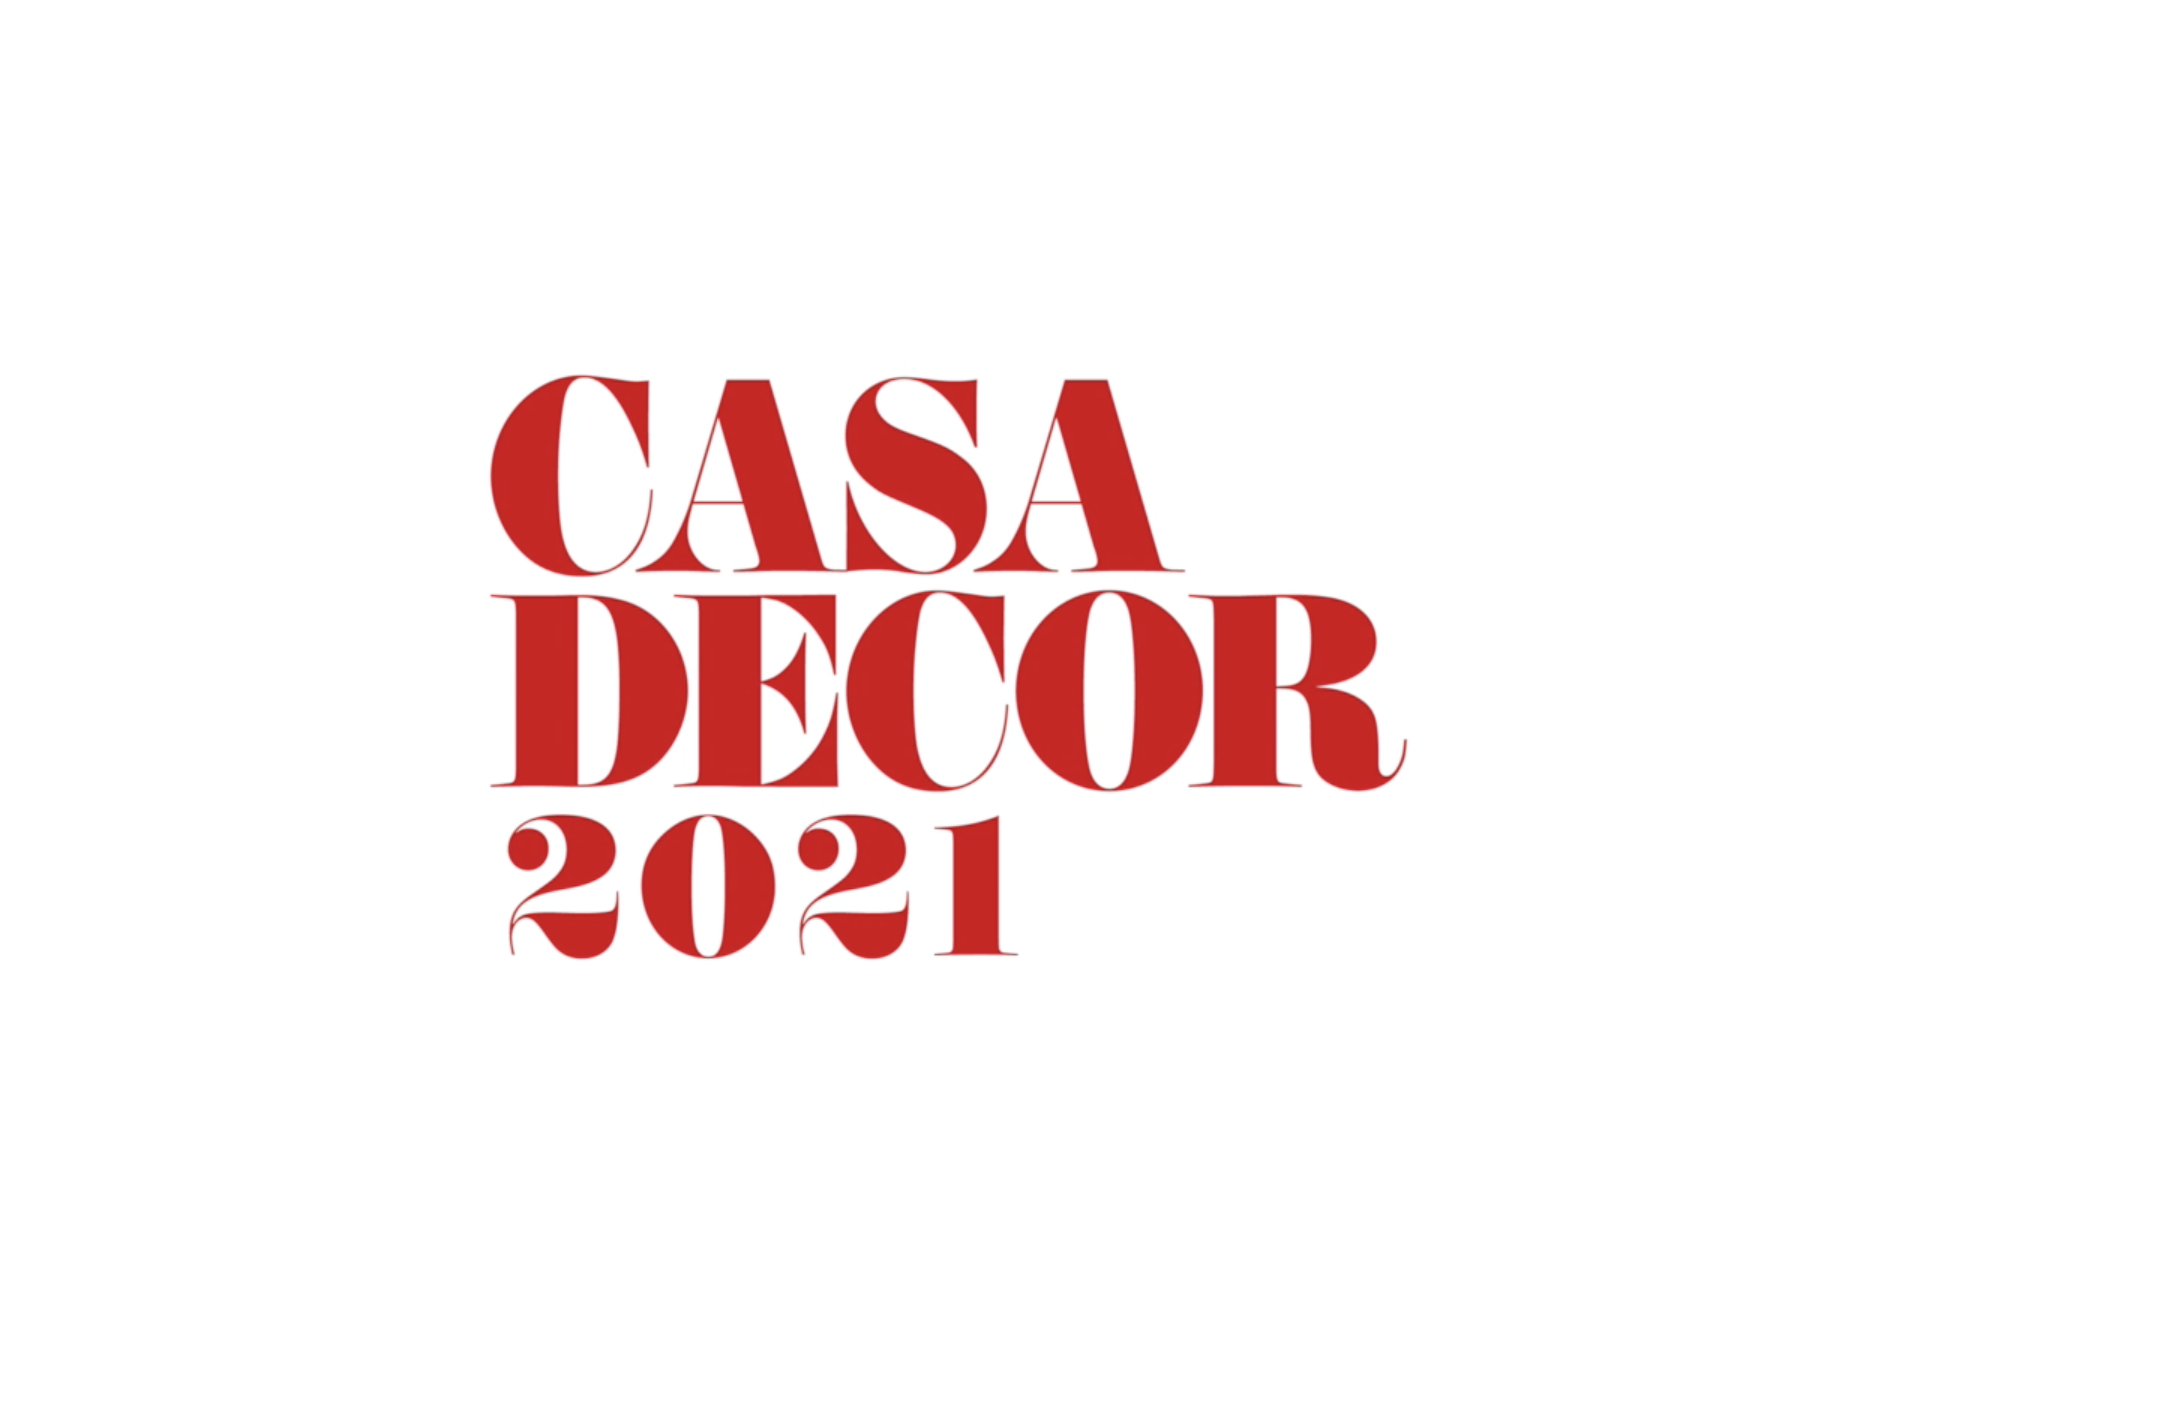 CASA DECOR 2021 Teaser